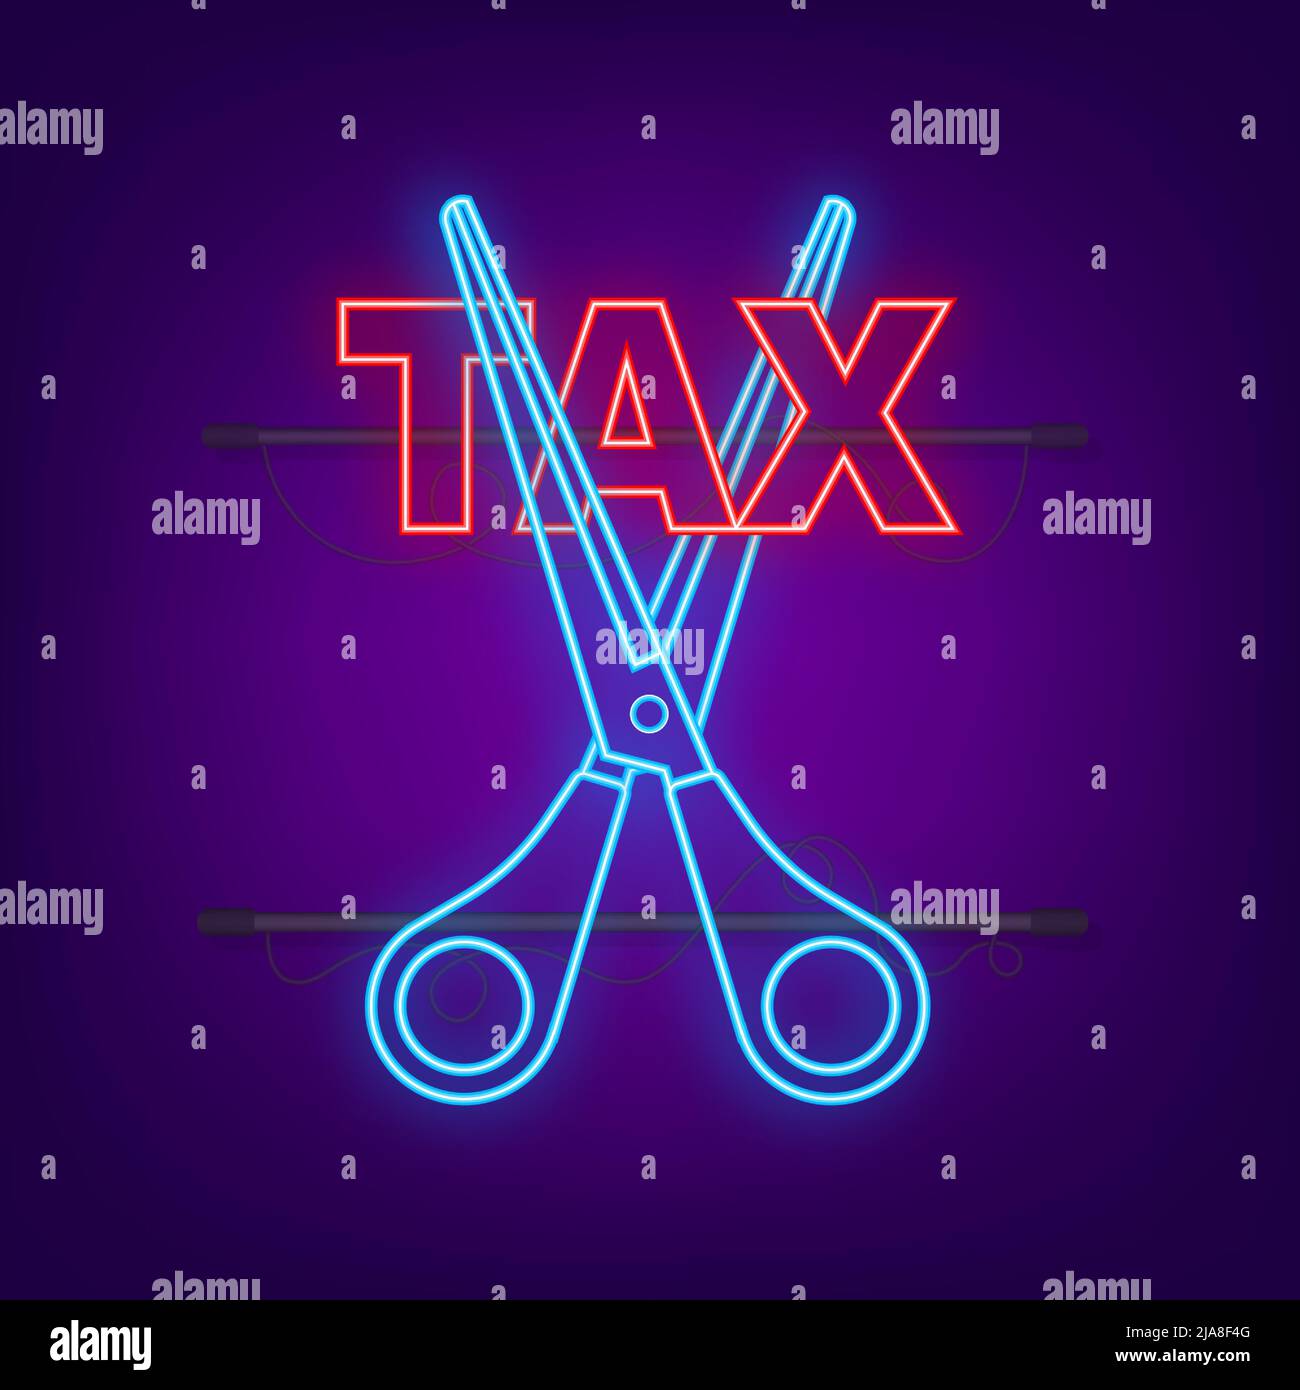 Tax Cut im Neon-Stil auf schwarzem Hintergrund. Vektorgrafik, Zeichentrickfigur. Bearbeitbare Kontur. Stock Vektor